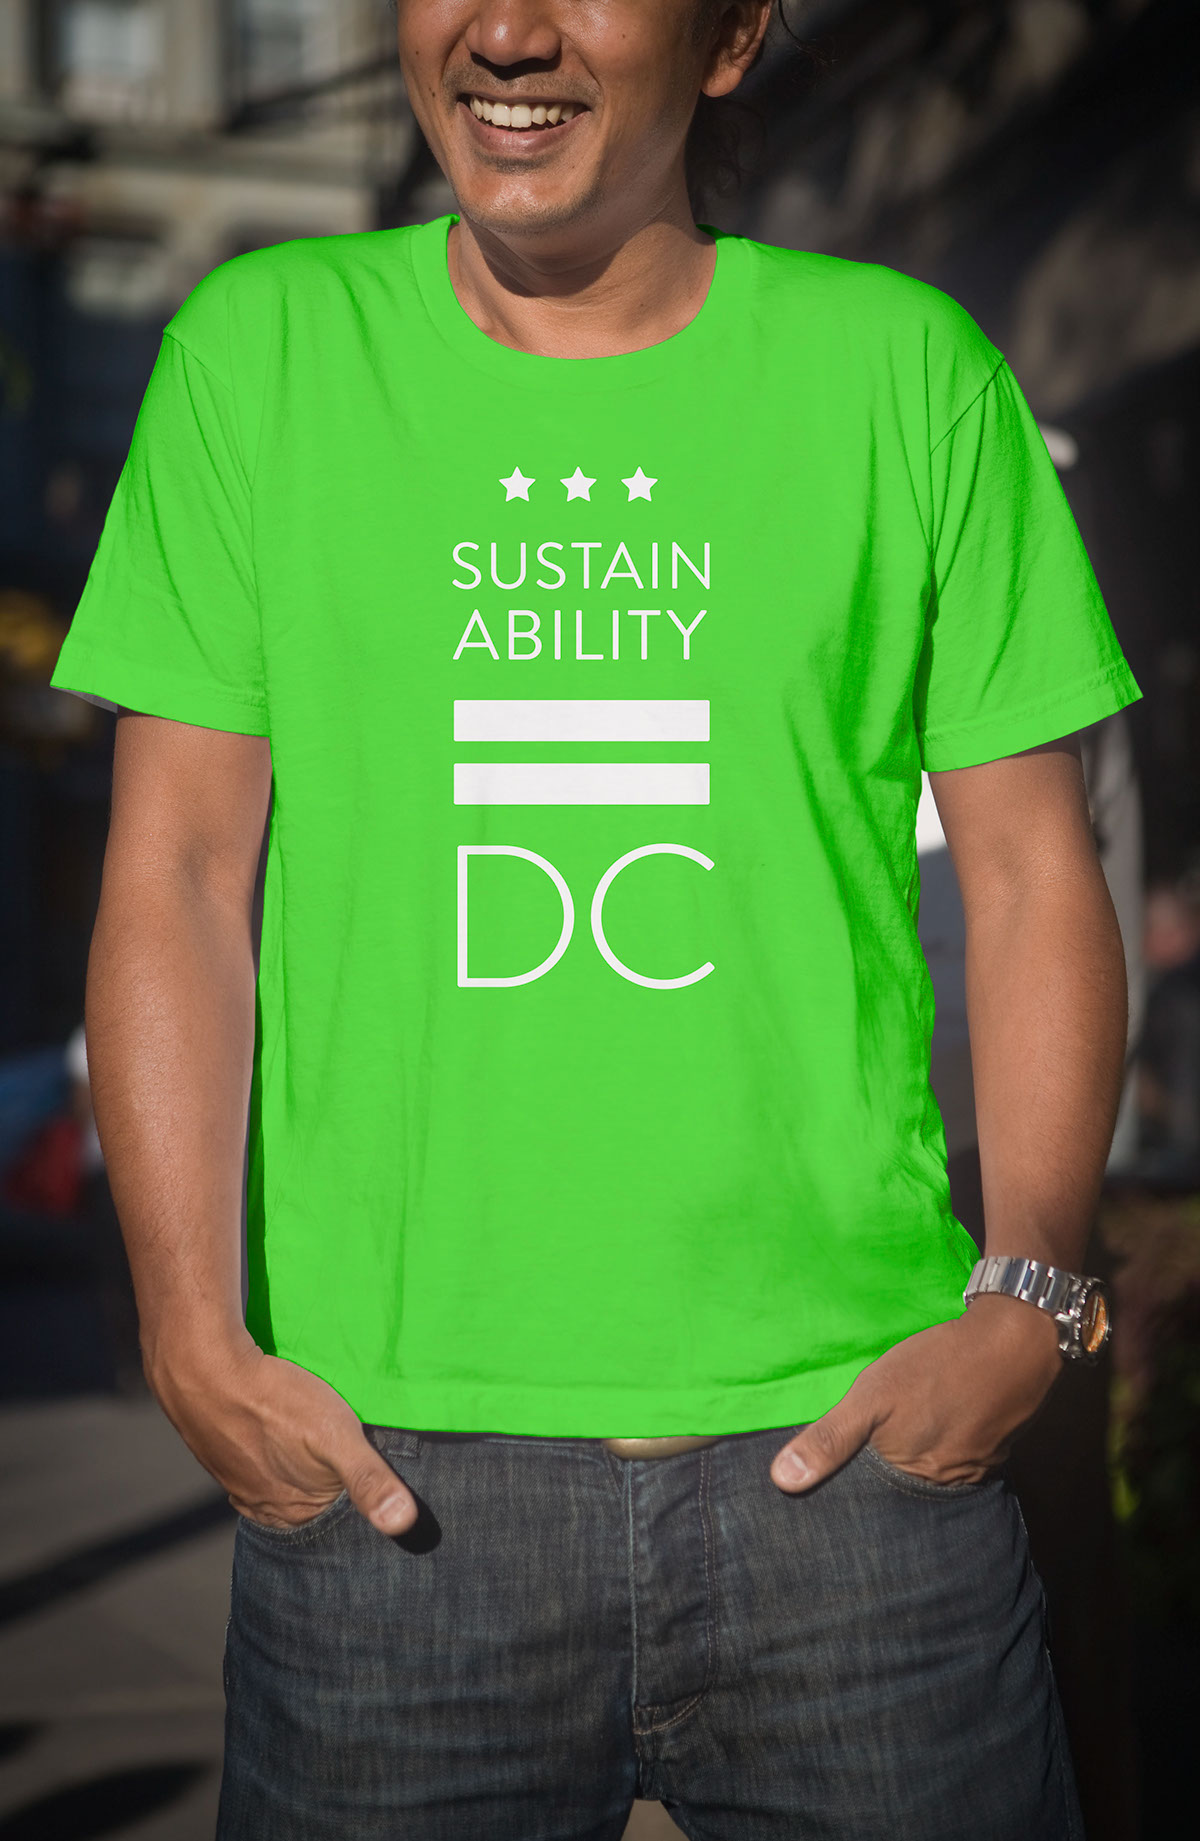 Sustainable DC Sustainability identity logo brand strategy Bruce Mau Design green